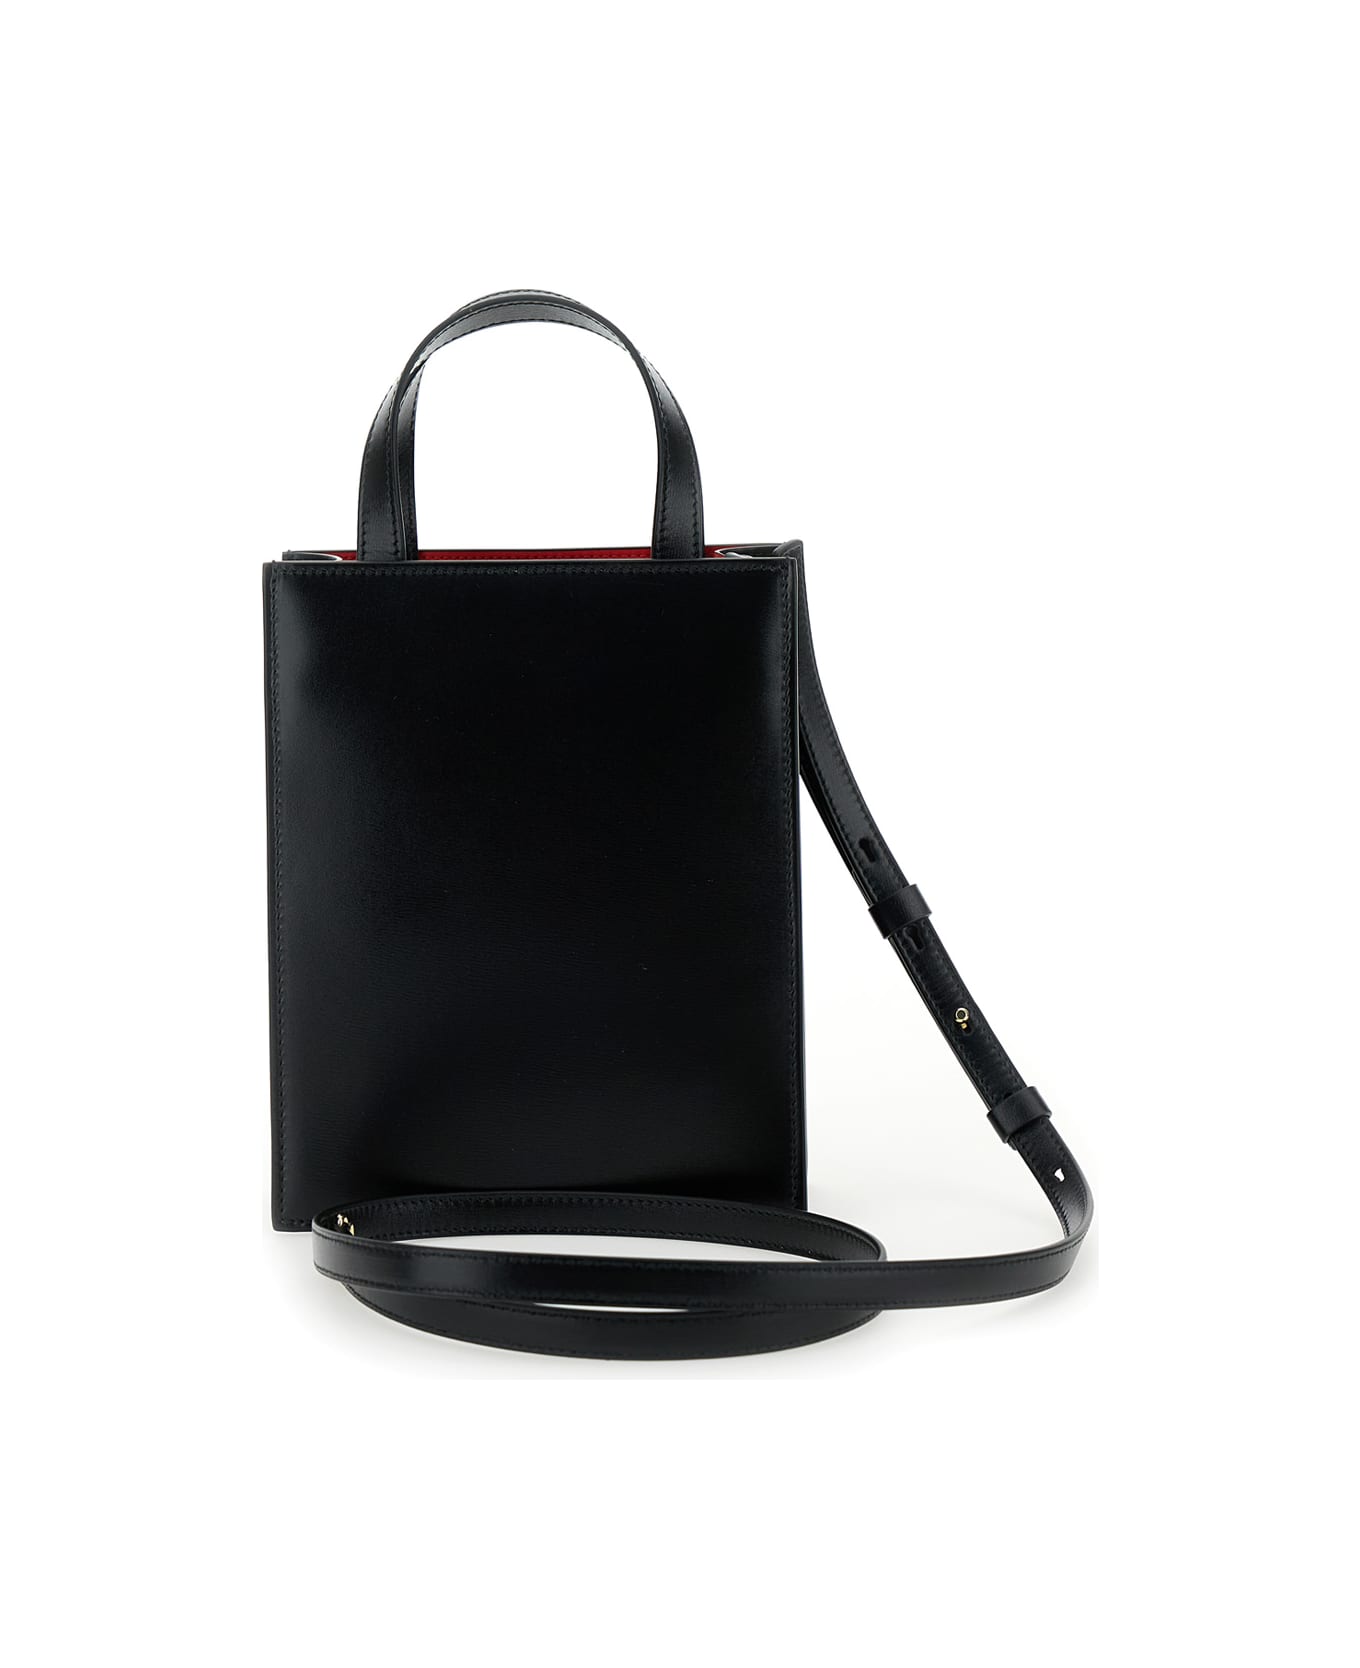 Ferragamo Black Crossbody Bag With Logo Gancini In Leather Woman - Black